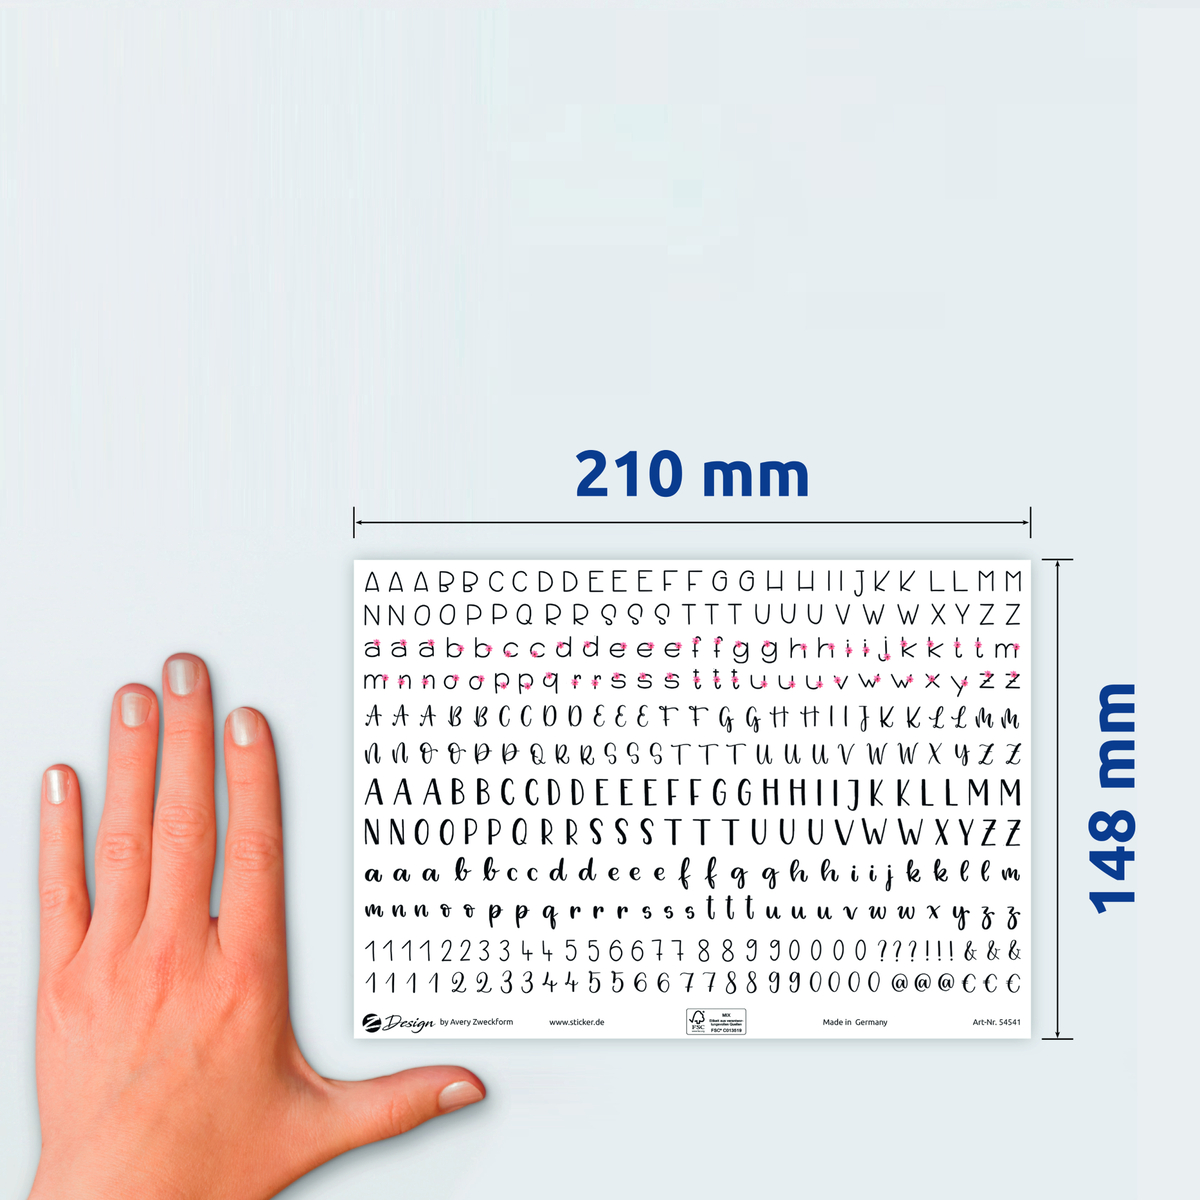 أفيري ملصقات التزيين علي شكل الحروف الأبجدية والأرقام بسطح ساتان عصري ، ورقة A5 ، عدد 648 ملصق/ صفحتين ، متعدد الالوان ، 54541